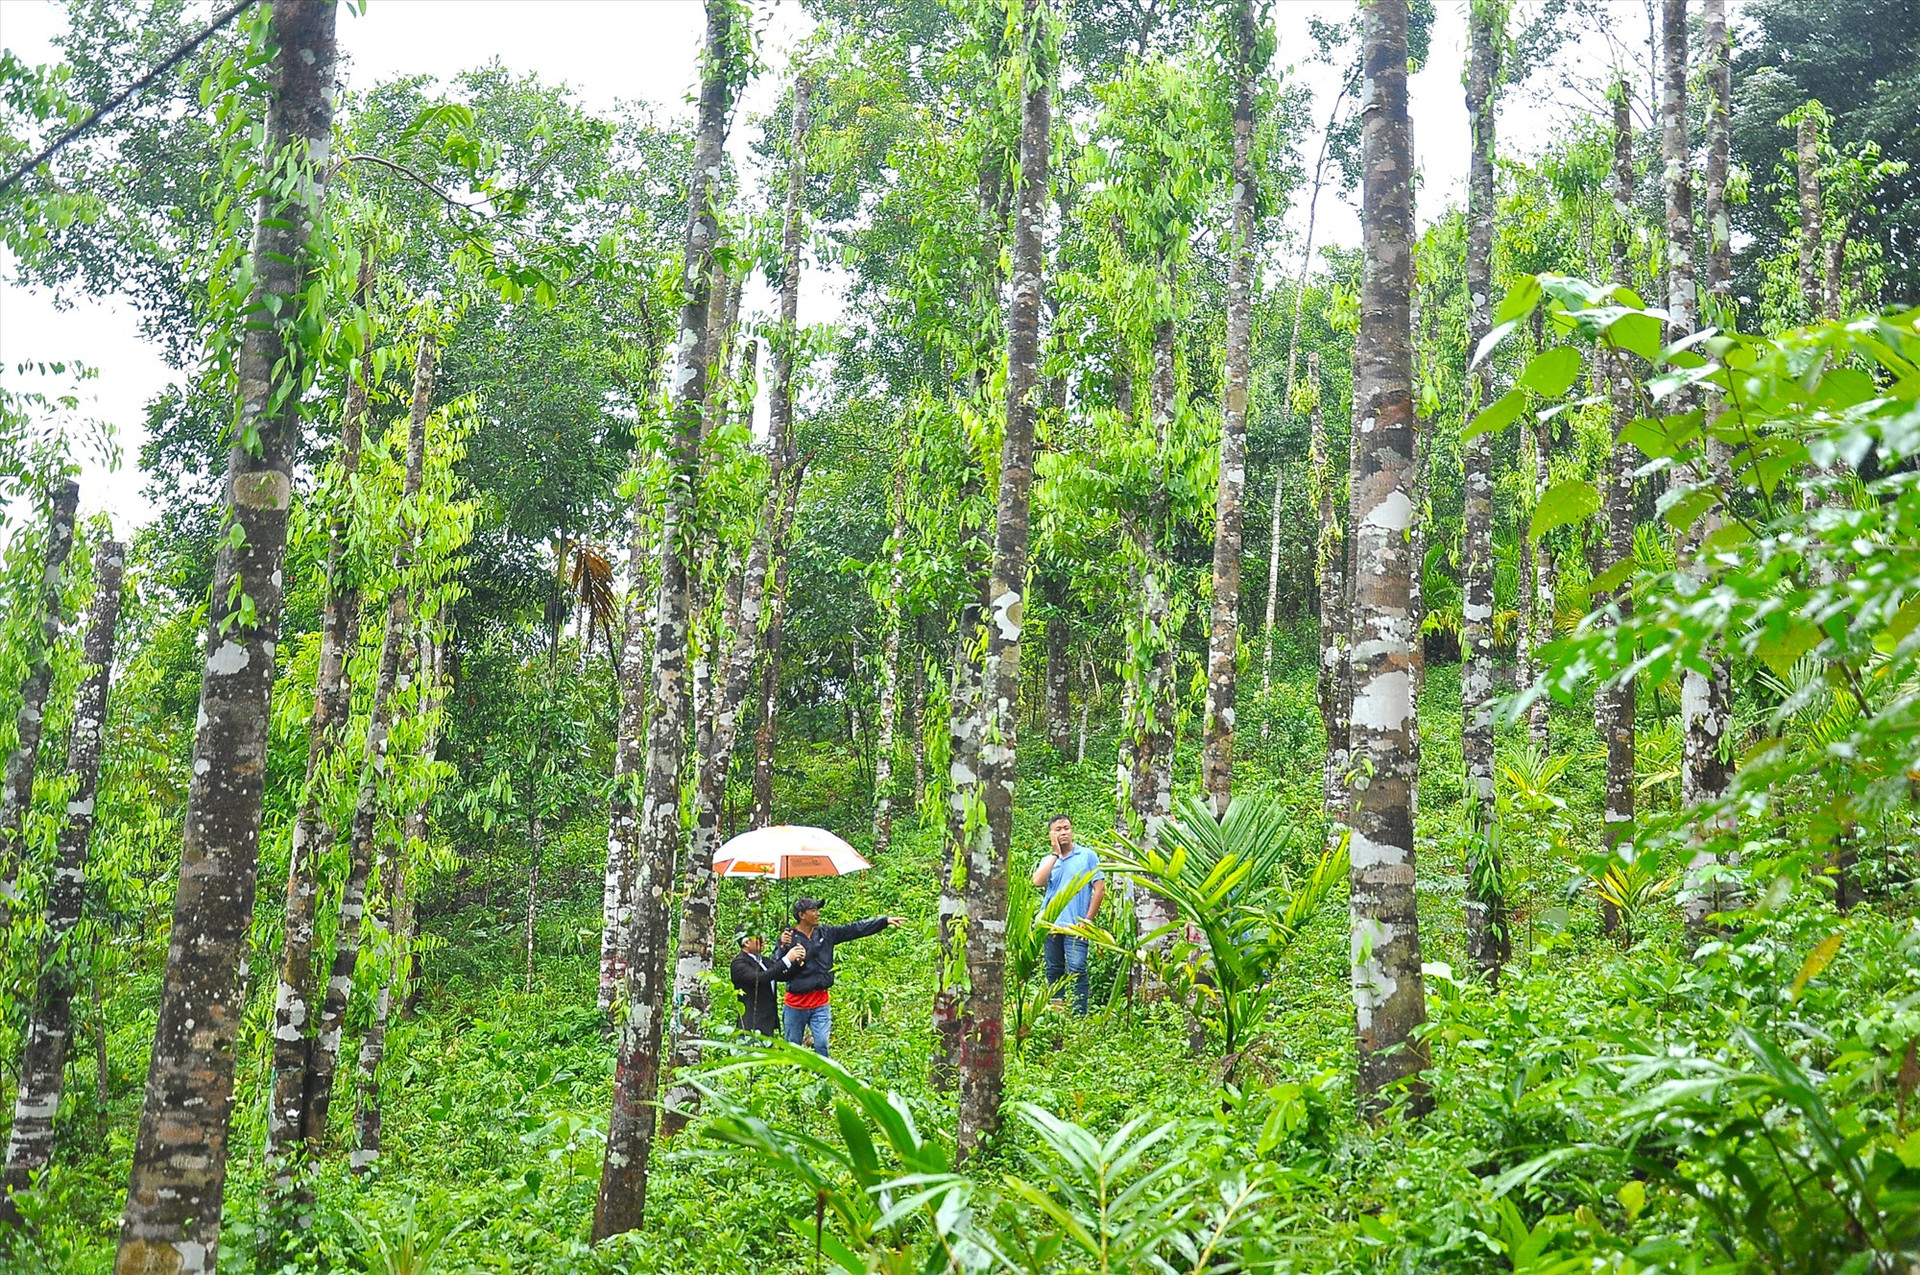 Hơn 1000 cây dó bầu trong vườn gia đình ông Trương Minh Thắng được doanh nghiệp mua, thuê lại để cấy tạo trầm hương. Ảnh: P.V